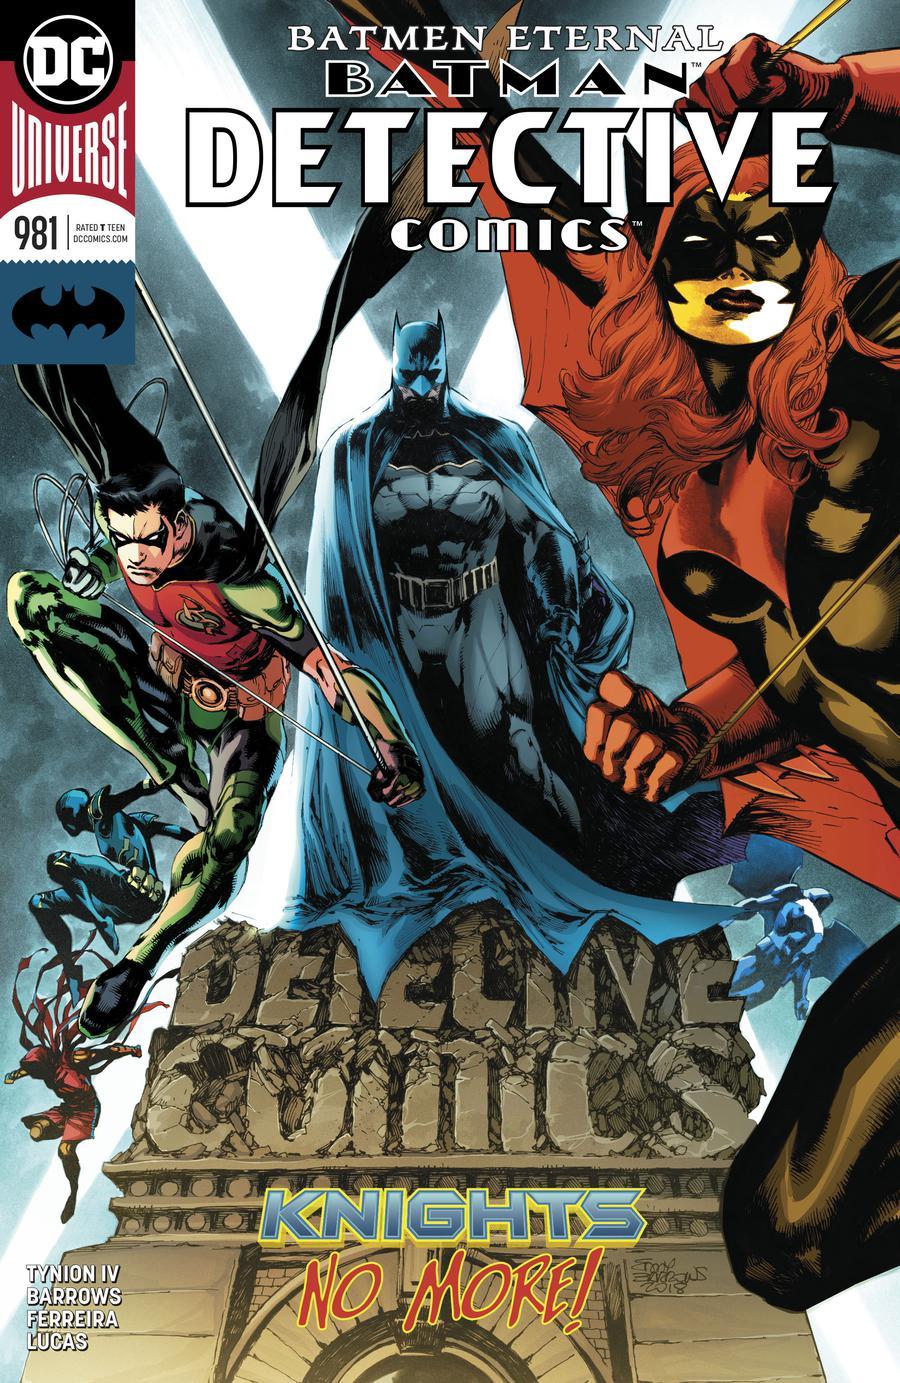 Detective Comics Vol. 2 #981